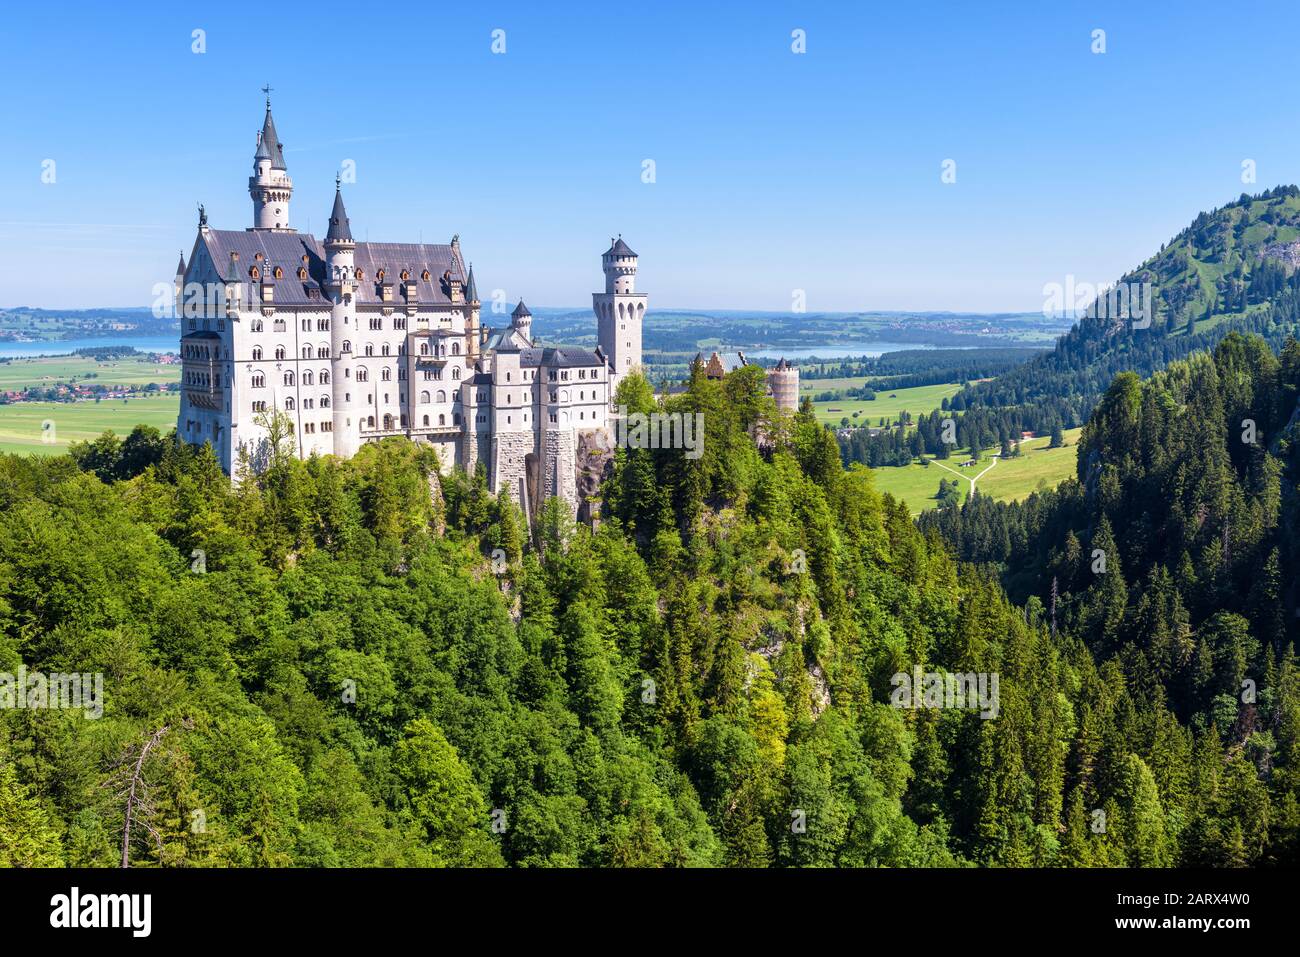 Château de Neuschwanstein près de Fussen, Bavière, Allemagne. Ce château royal est un monument célèbre de l'Allemagne. Beau paysage avec montagnes et fairyta Banque D'Images